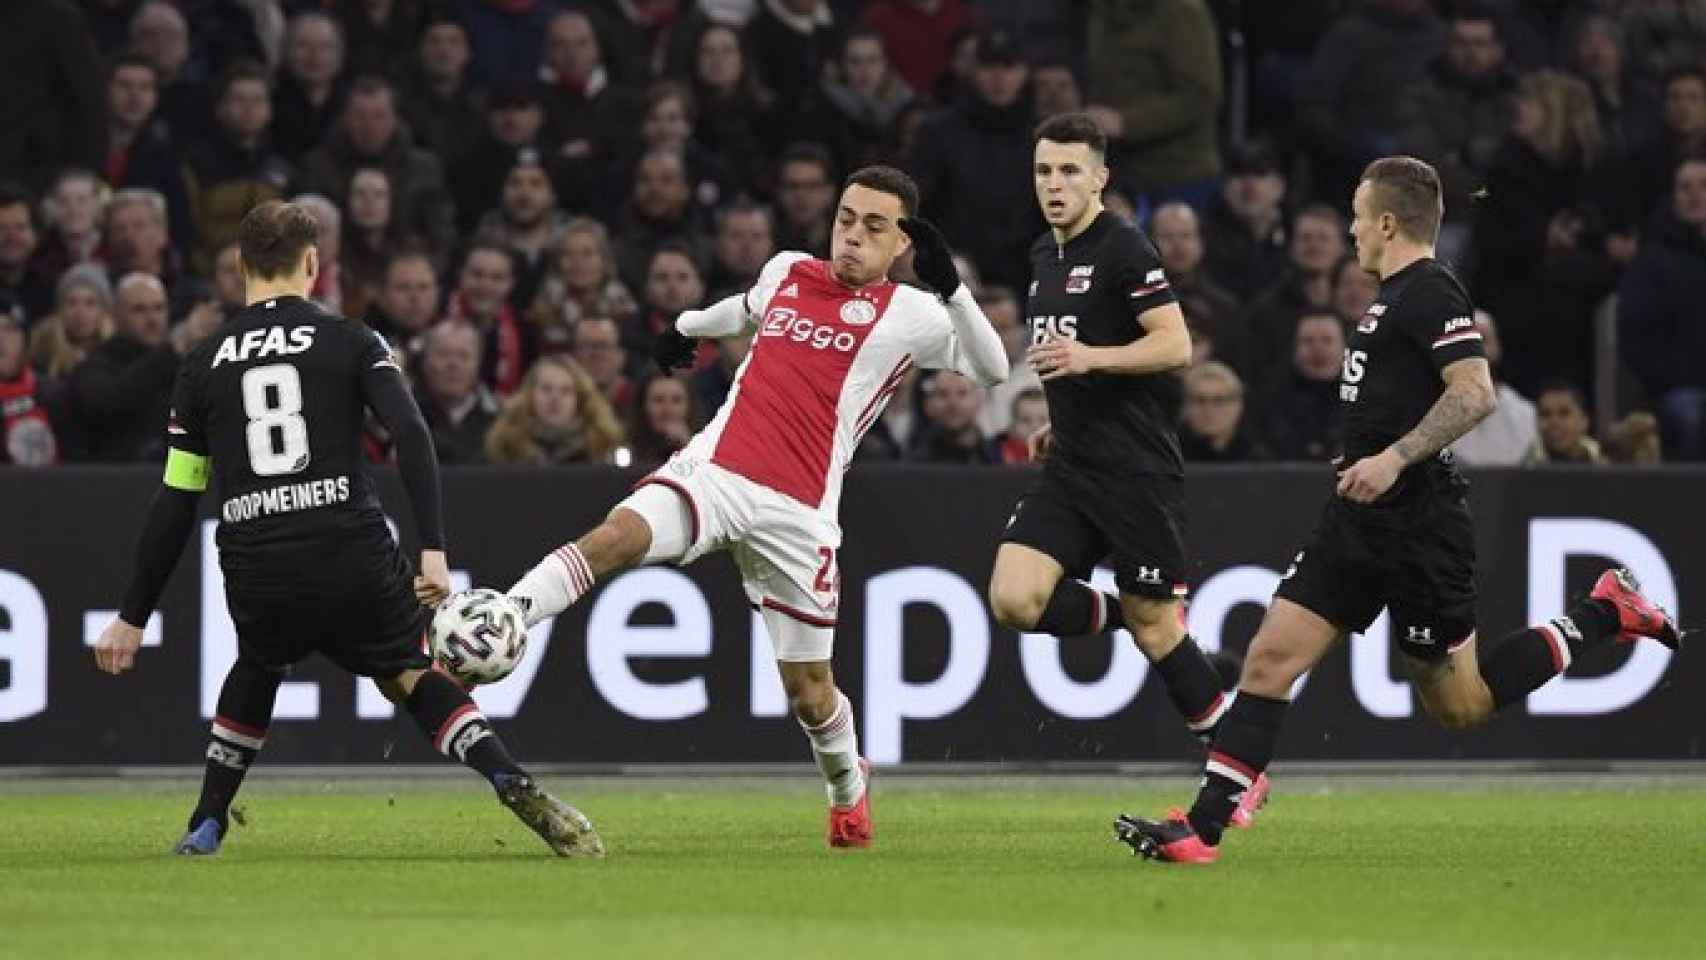 Sergiño Dest peleando un balón durante un partido del Ajax